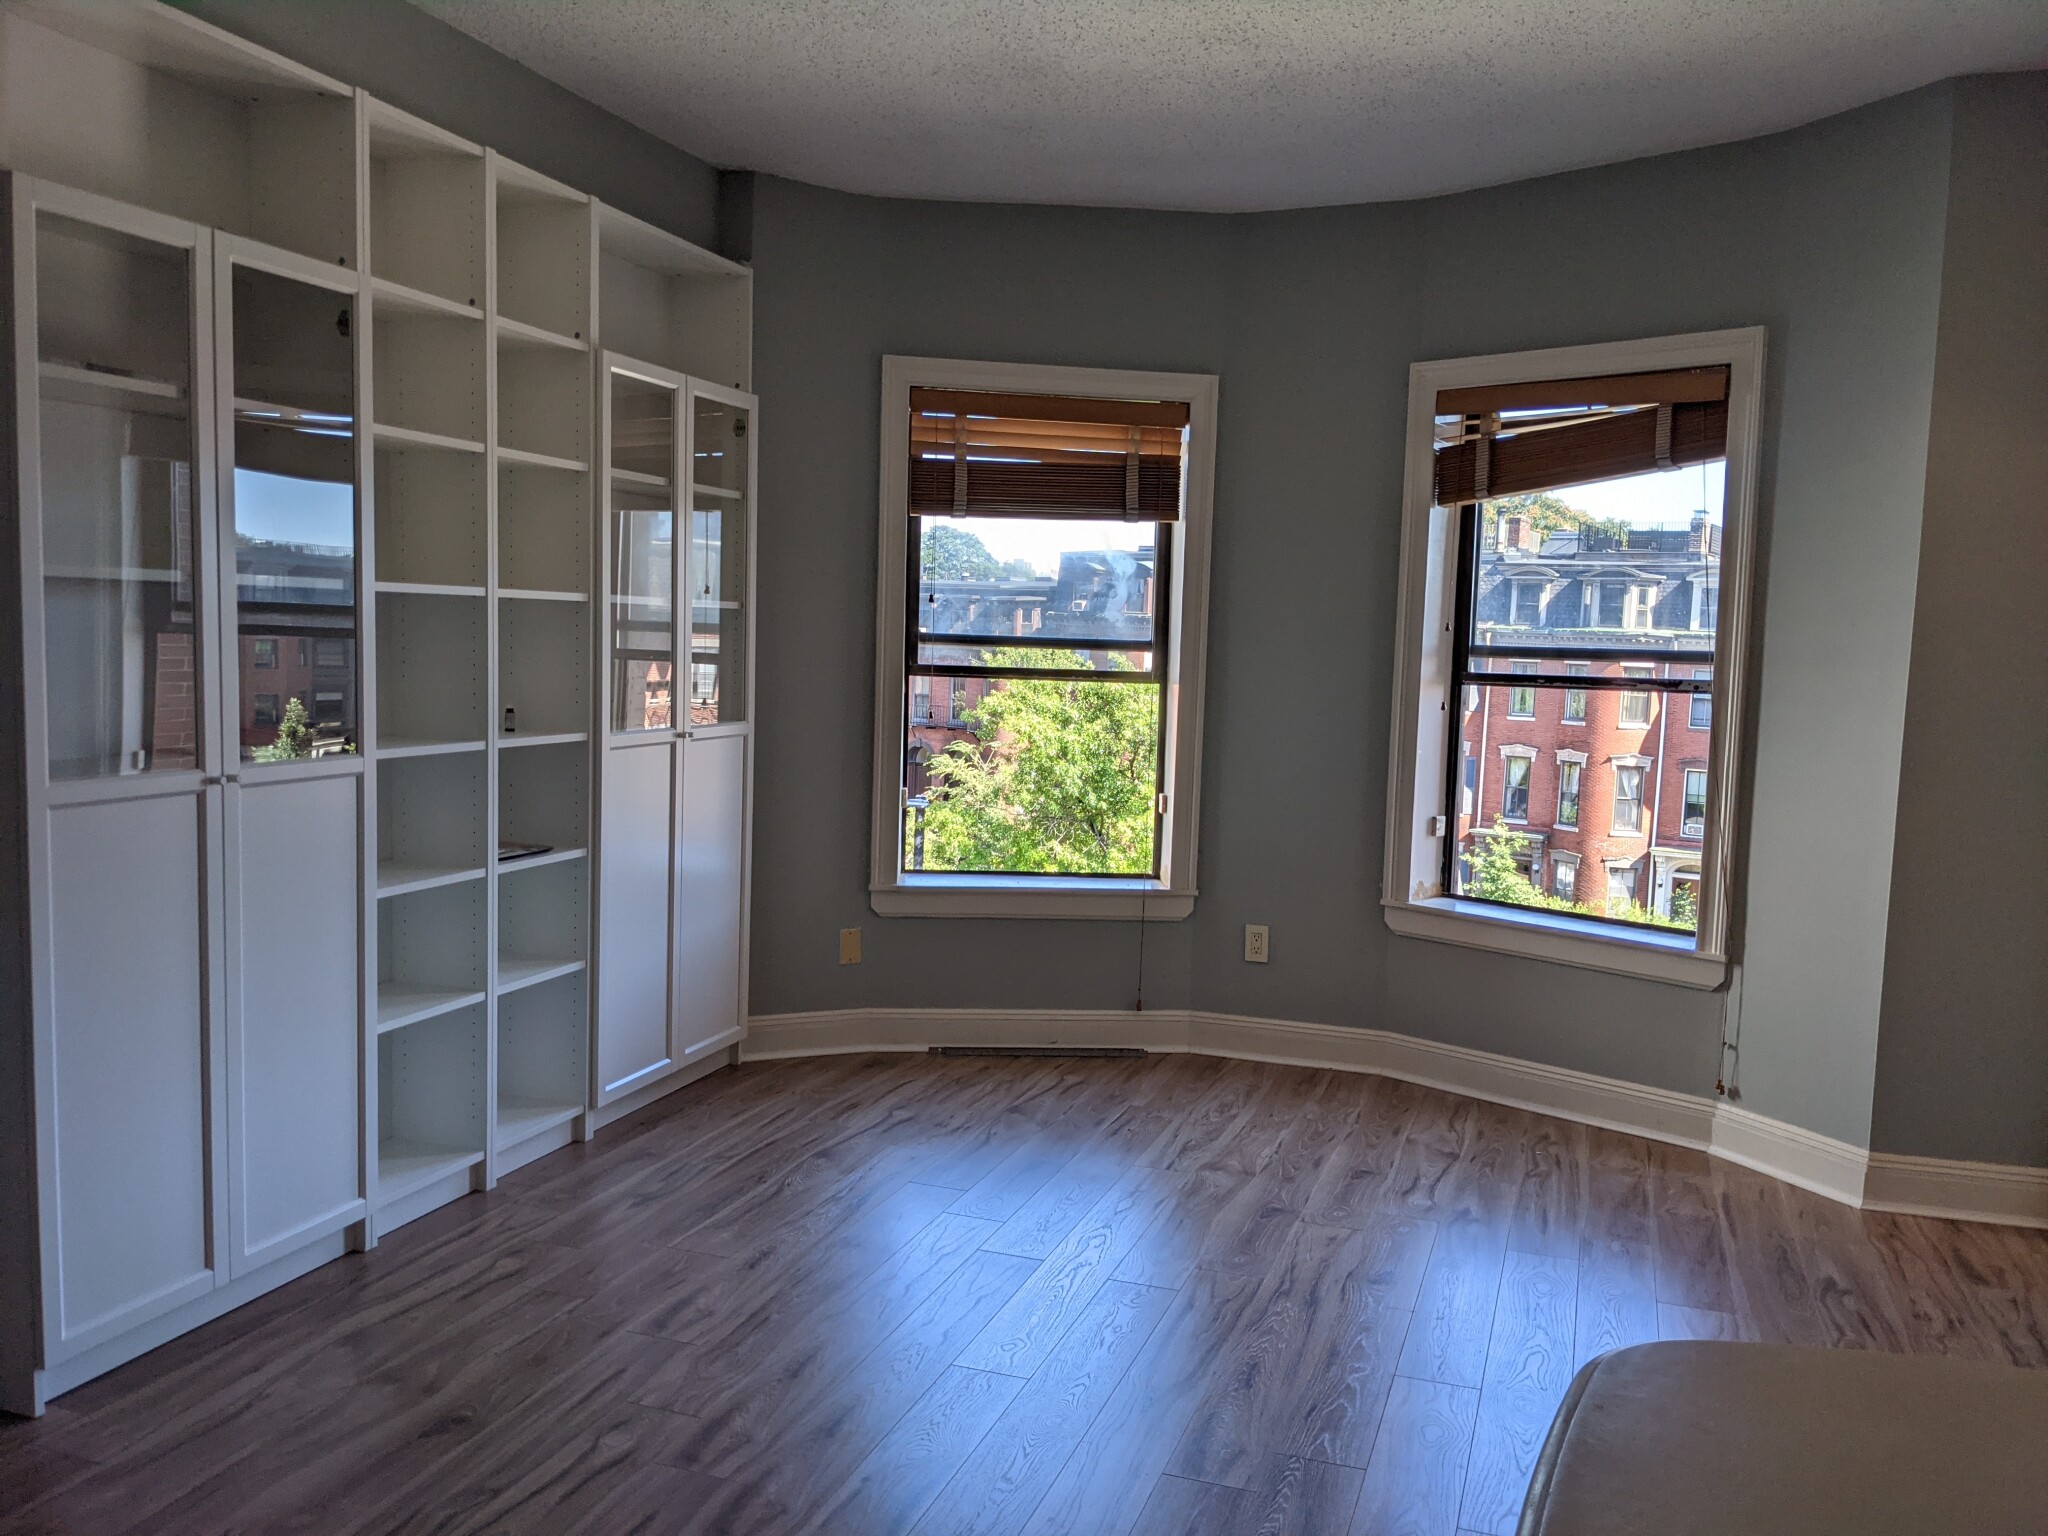 Photos of apartment on Appleton St.,Boston MA 02116